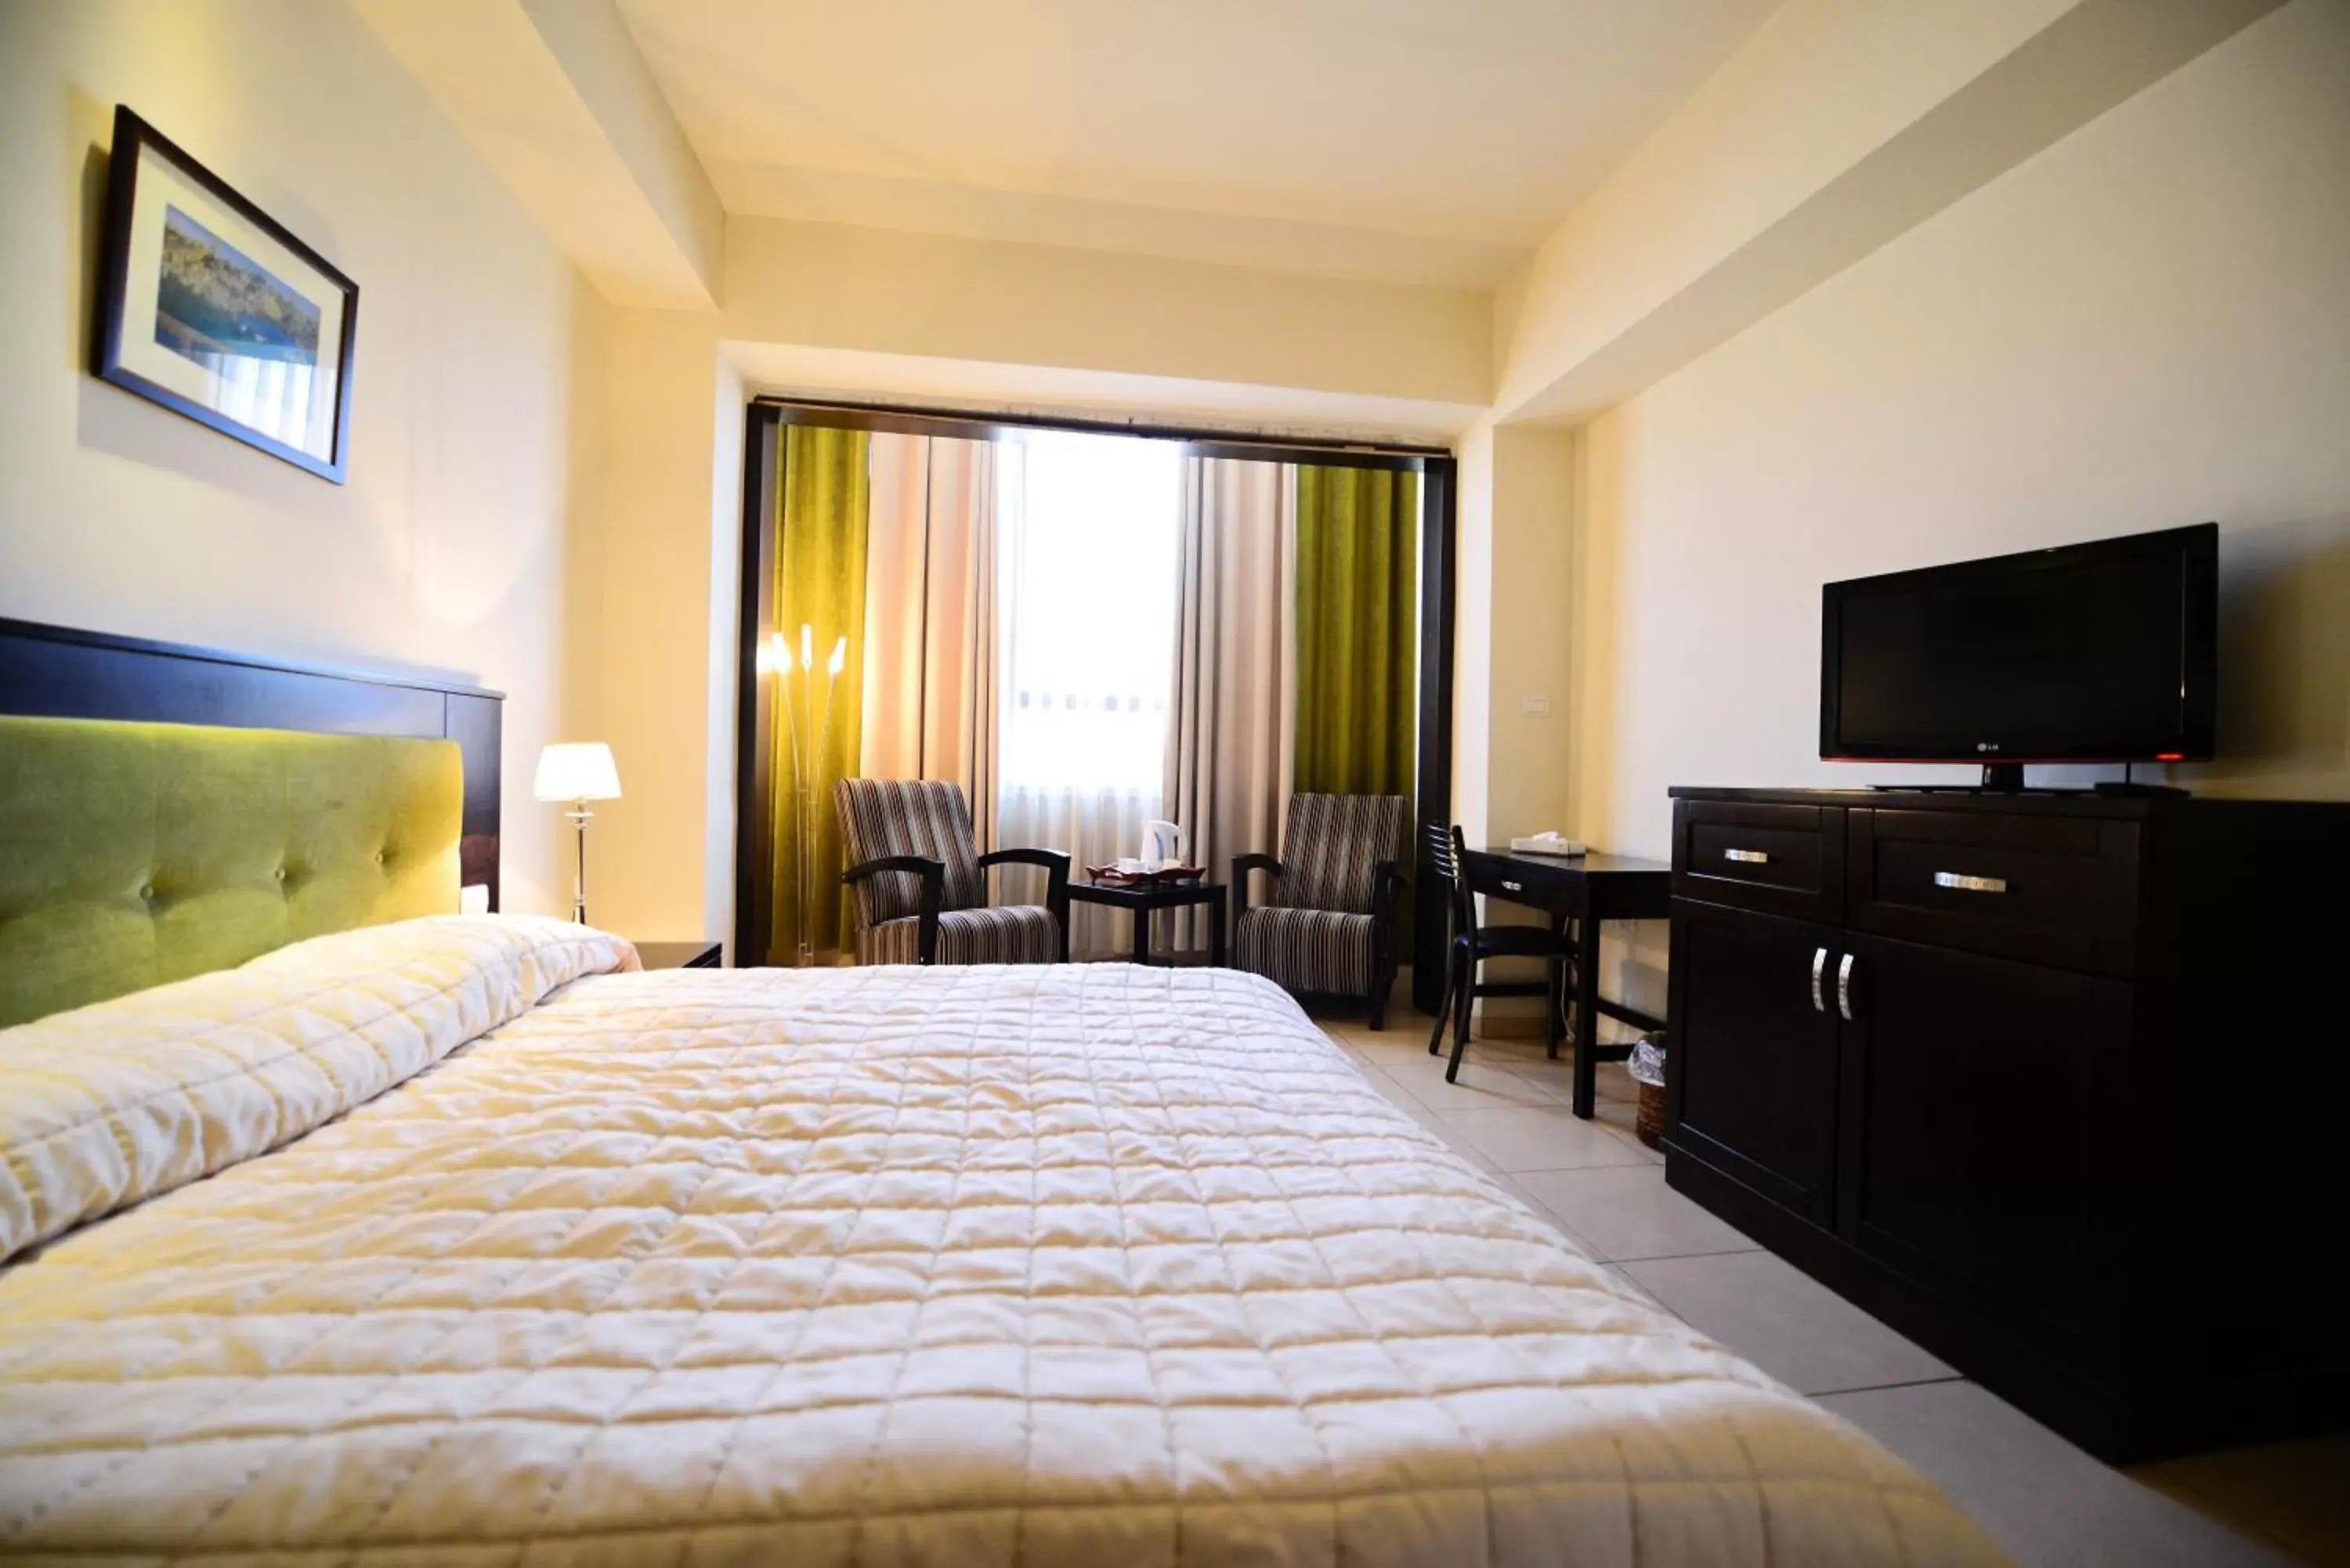 Bed in National Hotel - Jerusalem